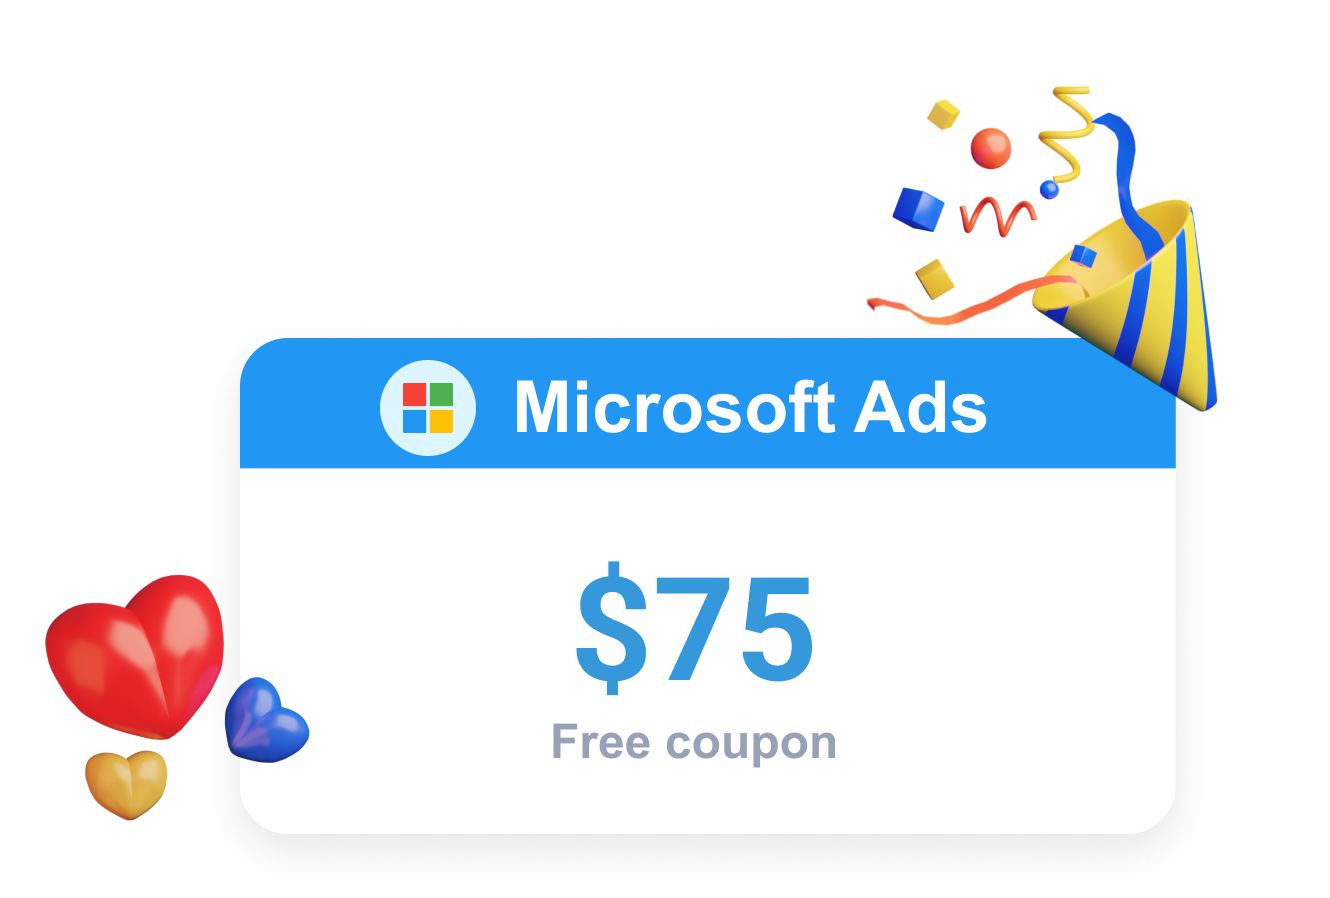 Clever Ads offre una Microsoft Ads Promo sotto forma di un coupon gratuito Bing Ads 